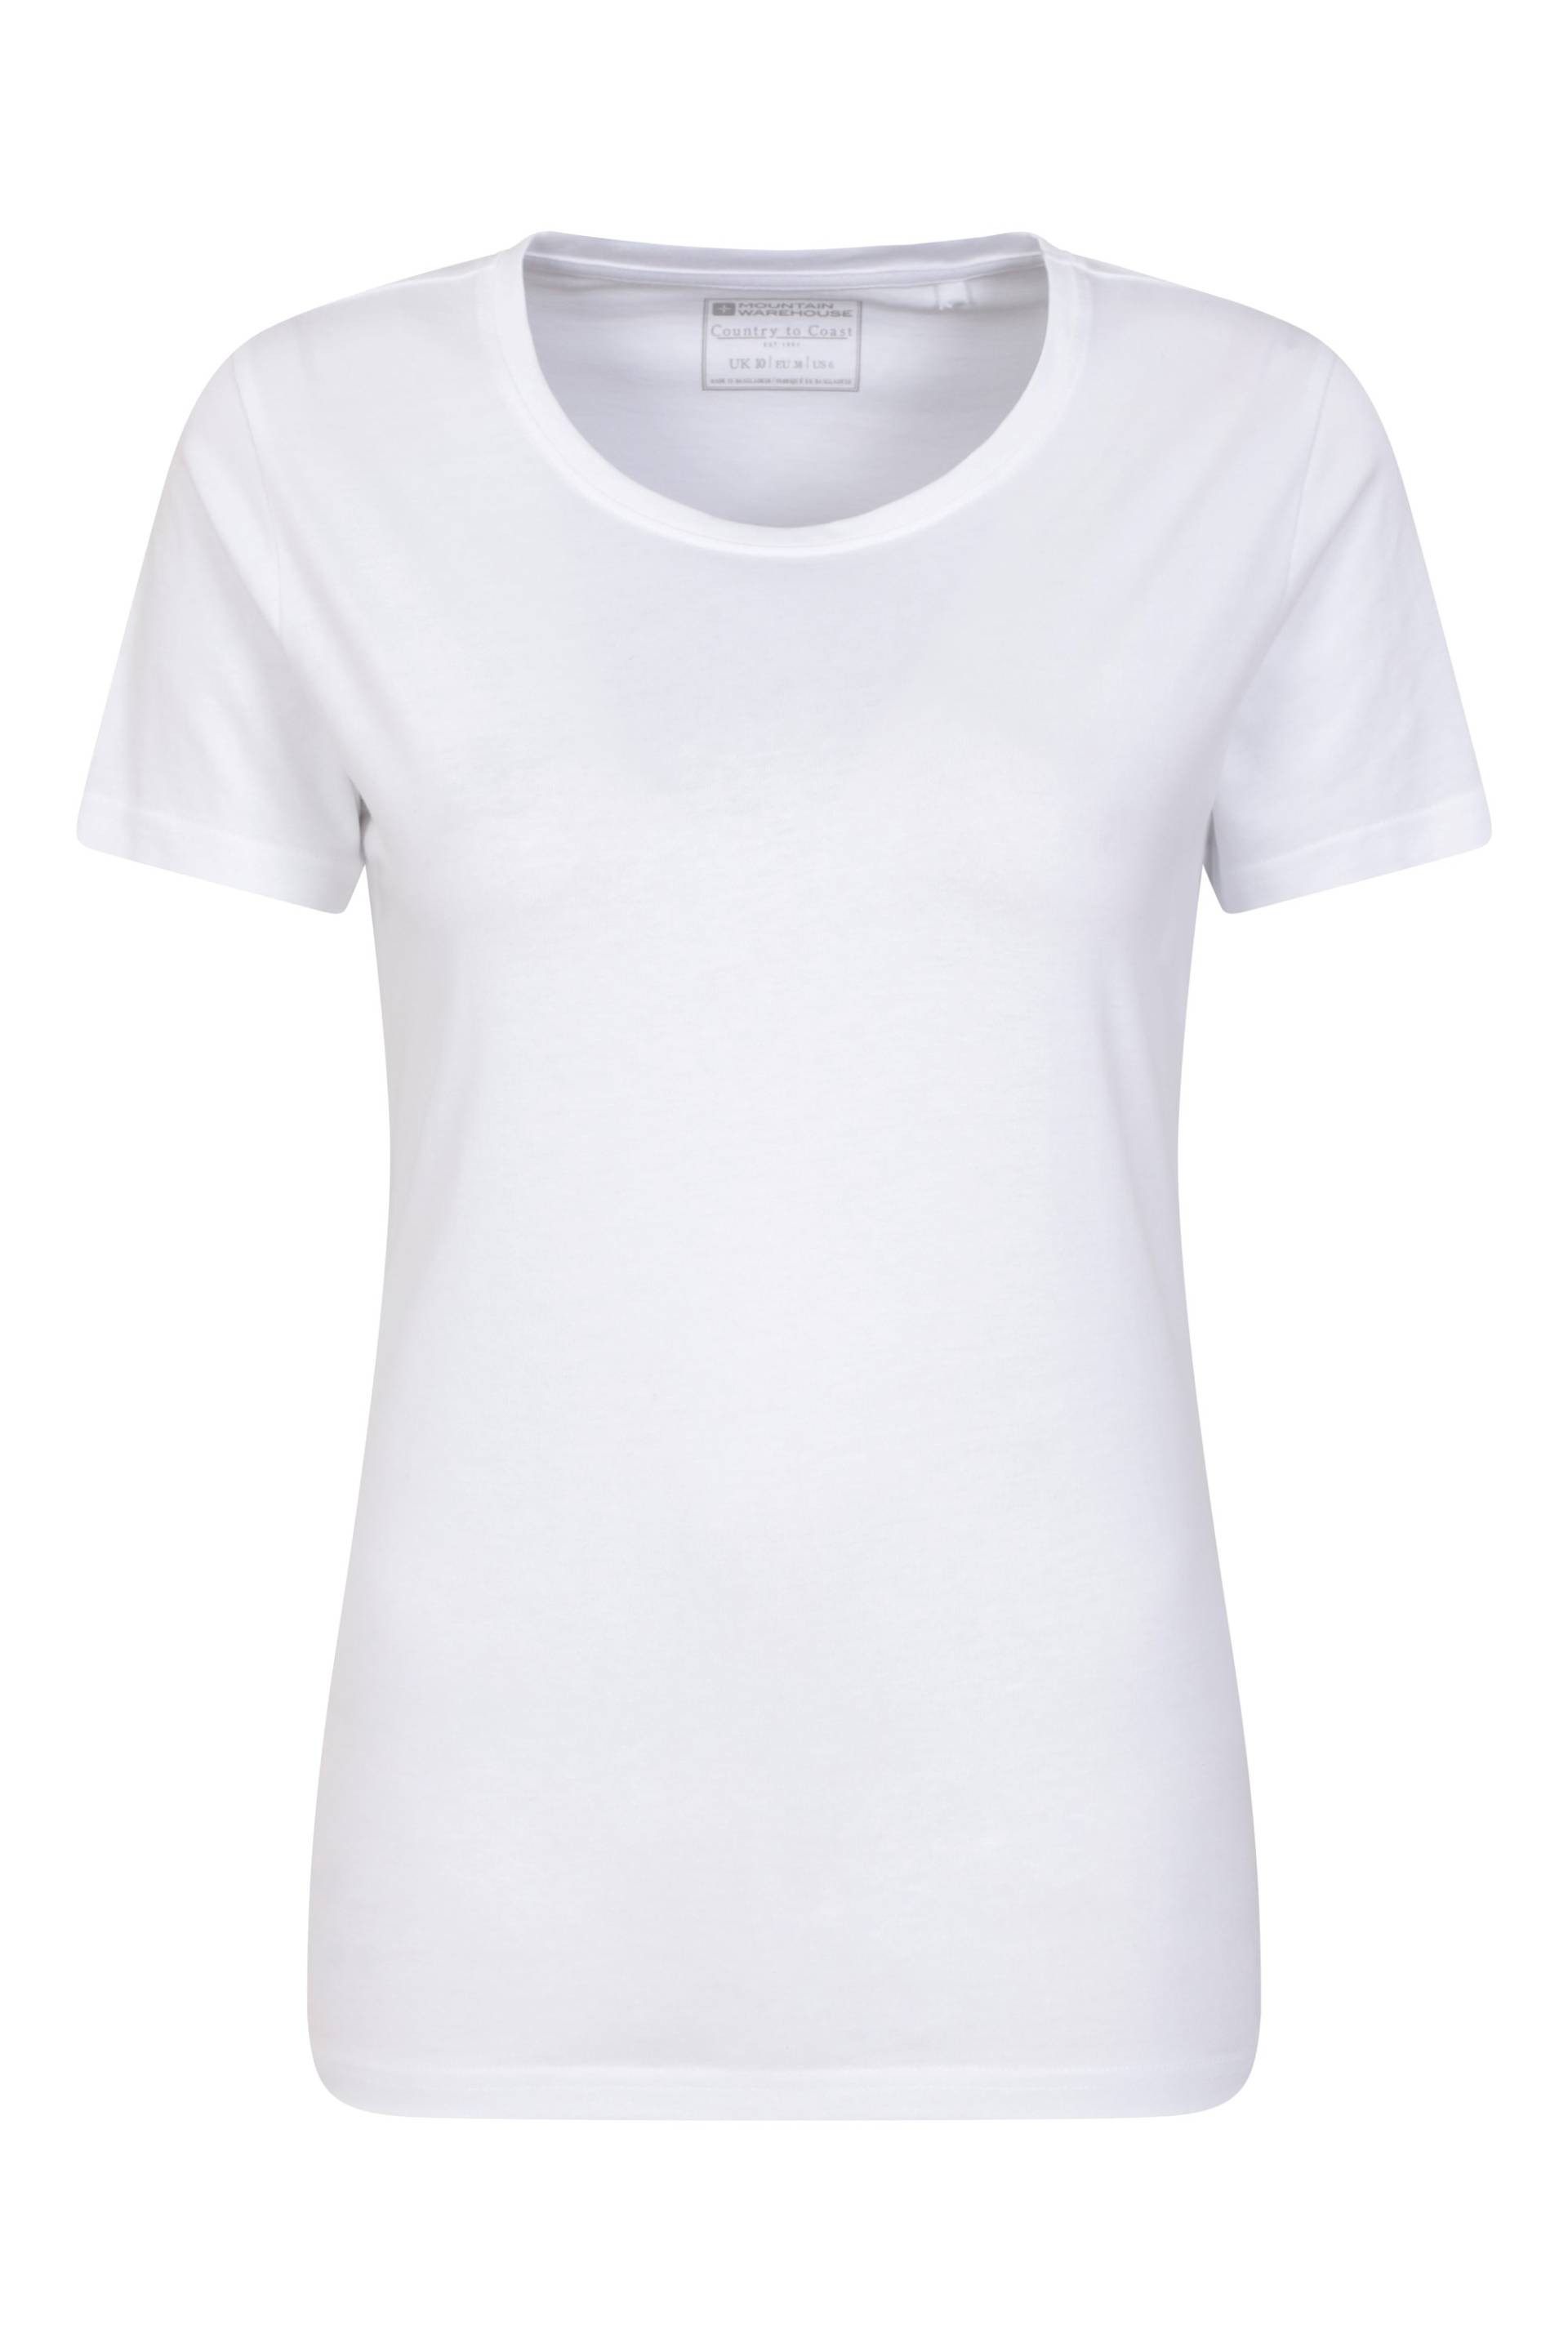 Basic Damen Rundhals T-Shirt - Weiss von Mountain Warehouse